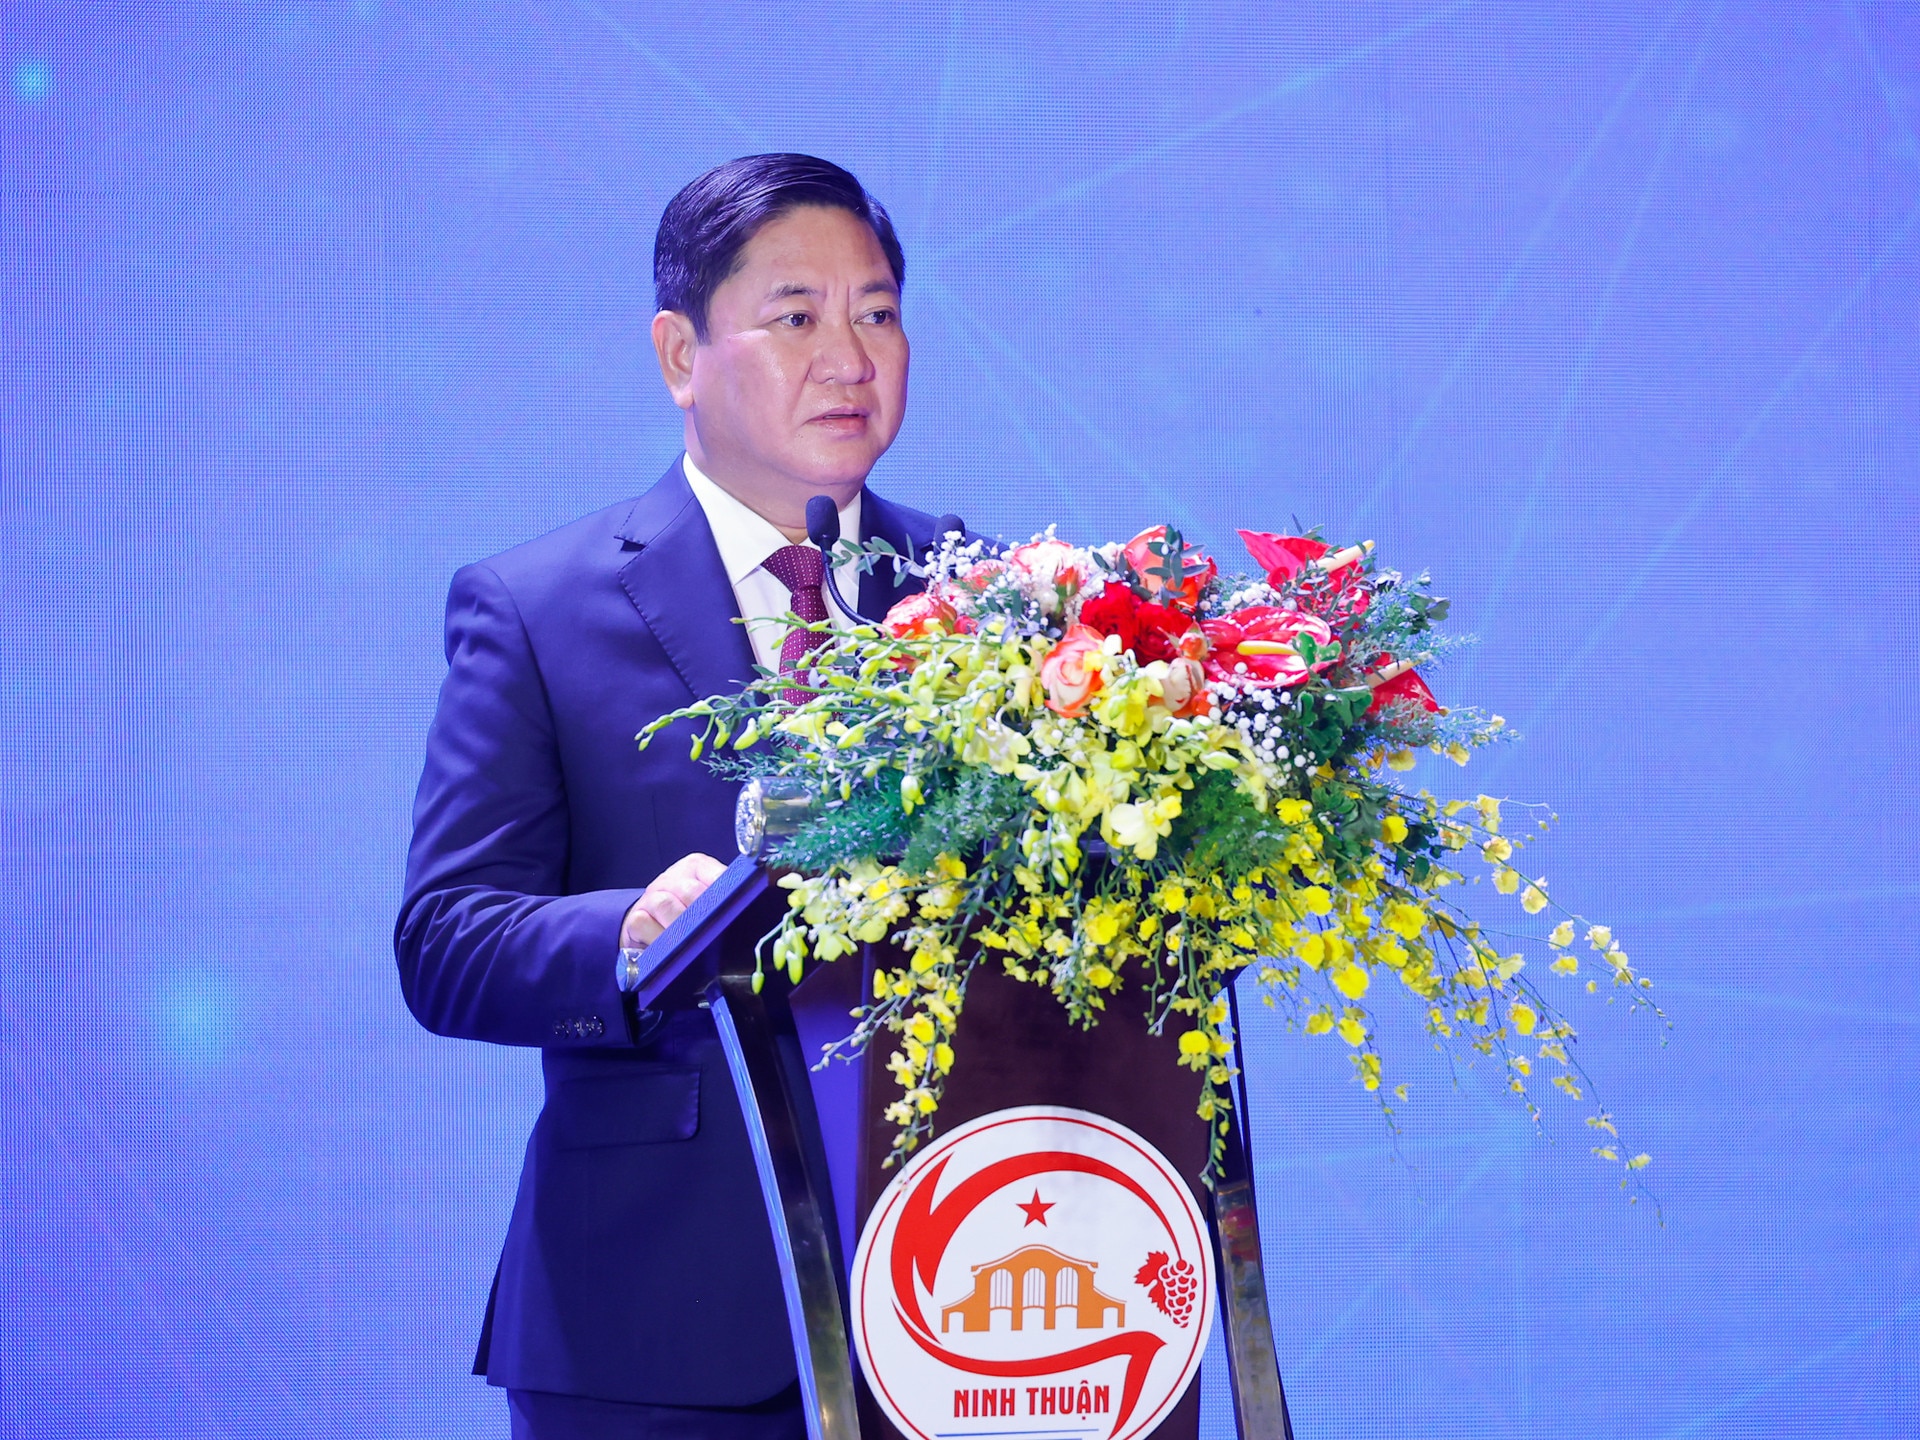 Thủ tướng kỳ vọng Ninh Thuận vượt lên mạnh mẽ, phát triển nhanh, bền vững- Ảnh 3.